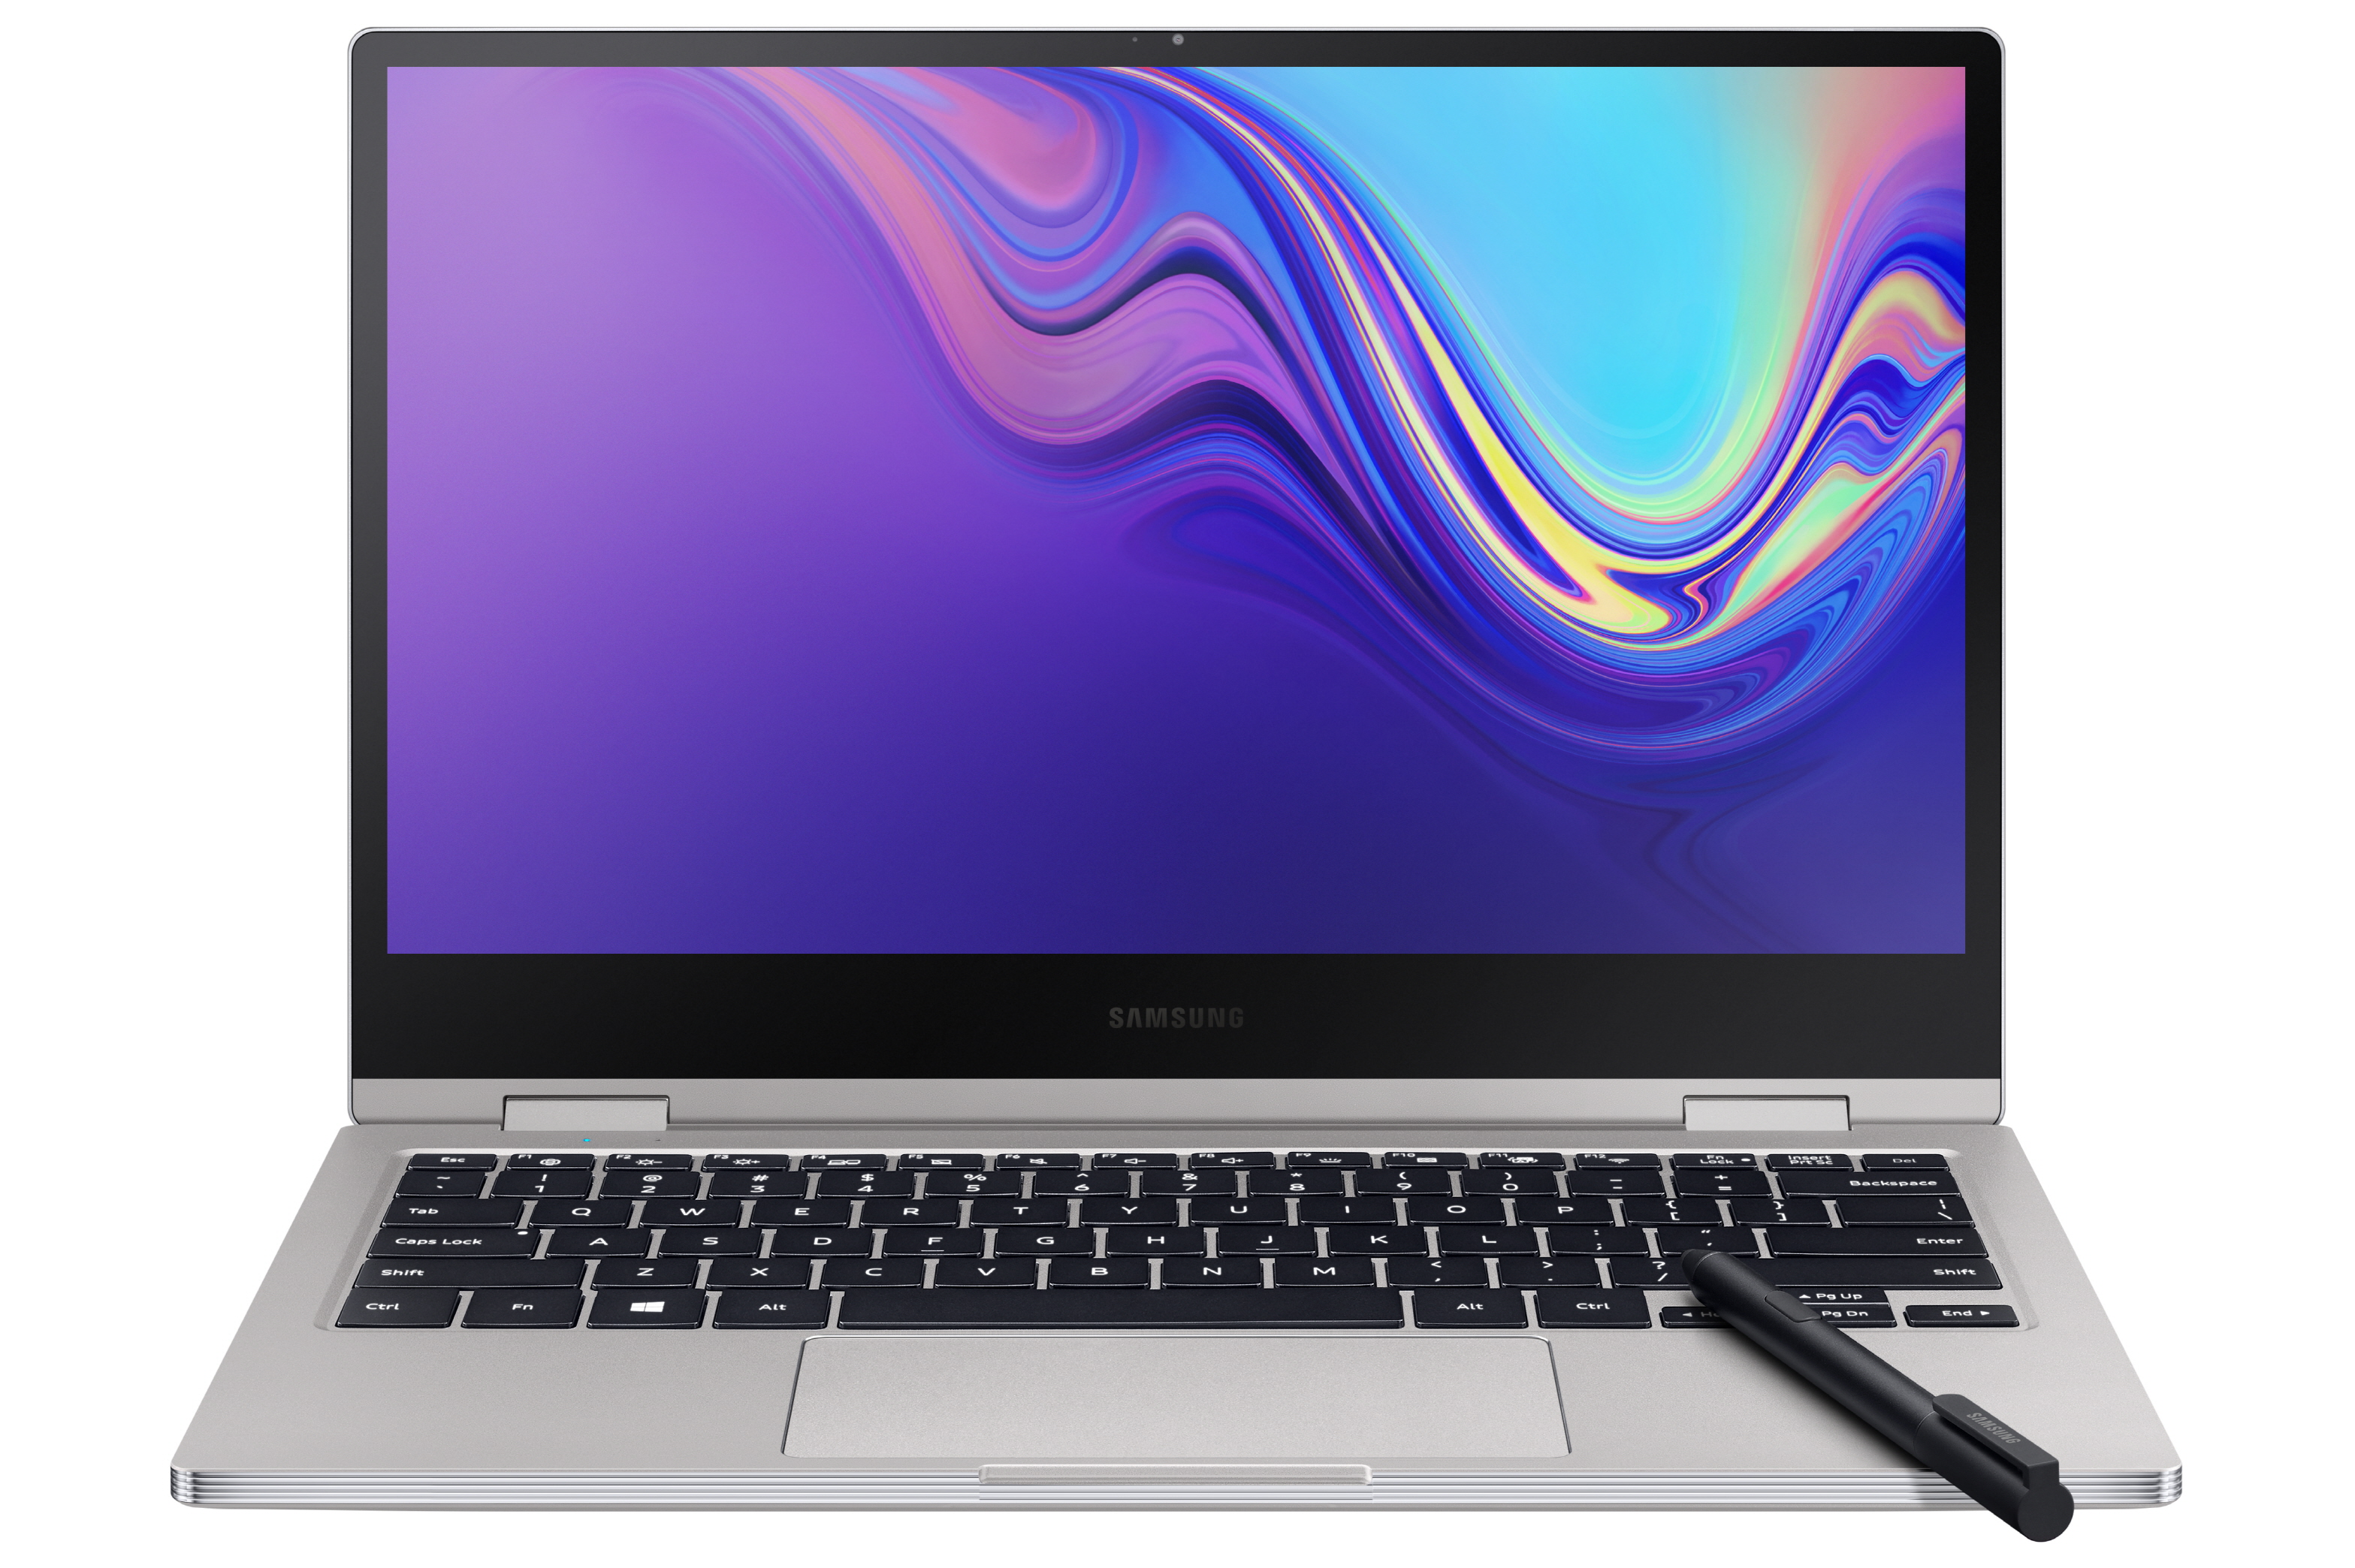 Samsung Notebook 9 Pro é o suprassumo da empresa em PCs portáteis